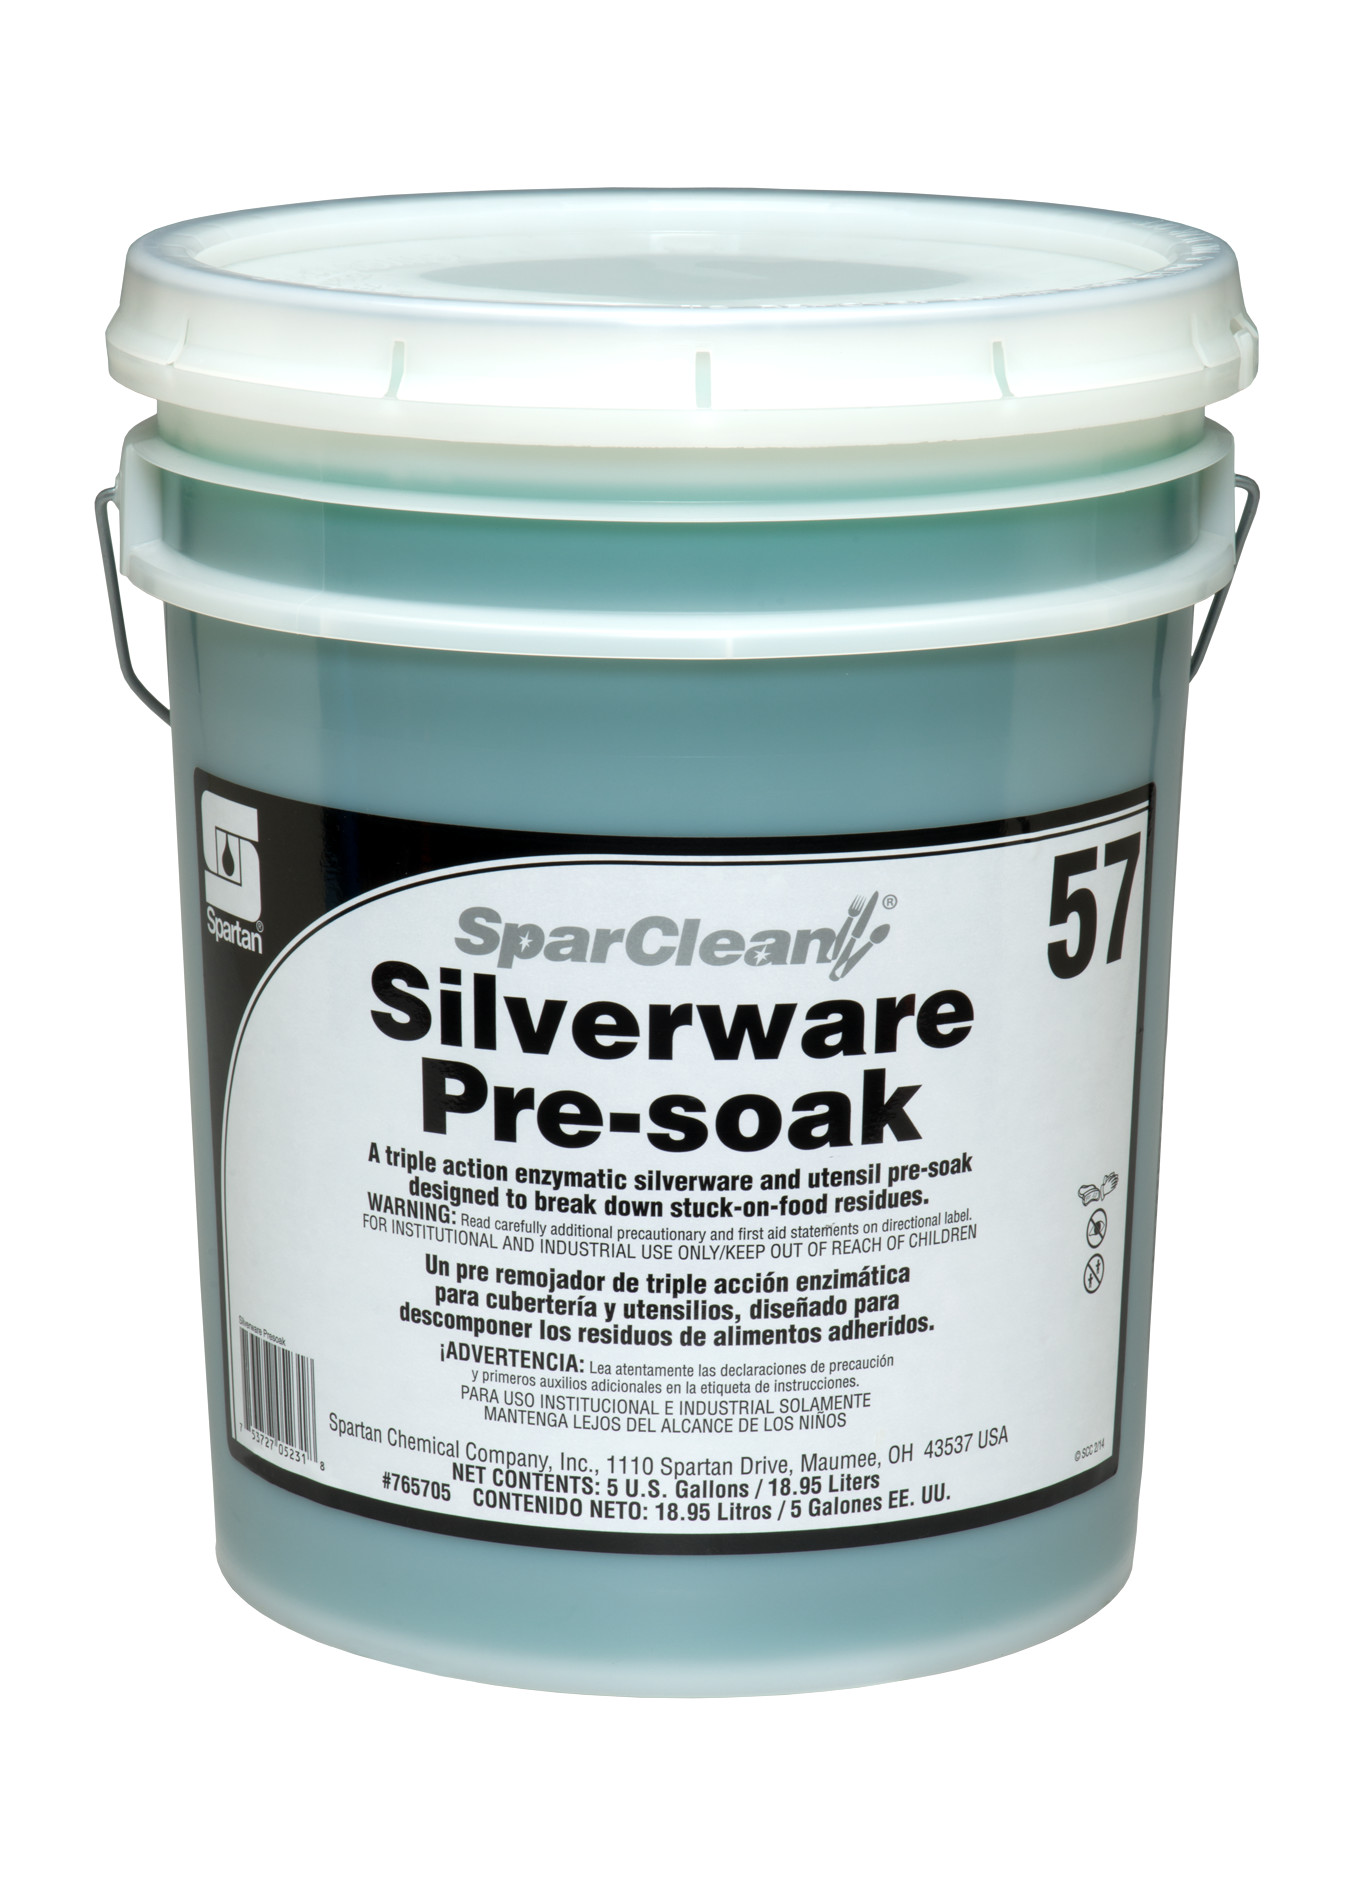 Spartan Chemical Company SparClean Silverware Pre-Soak 57, 5 GAL PAIL